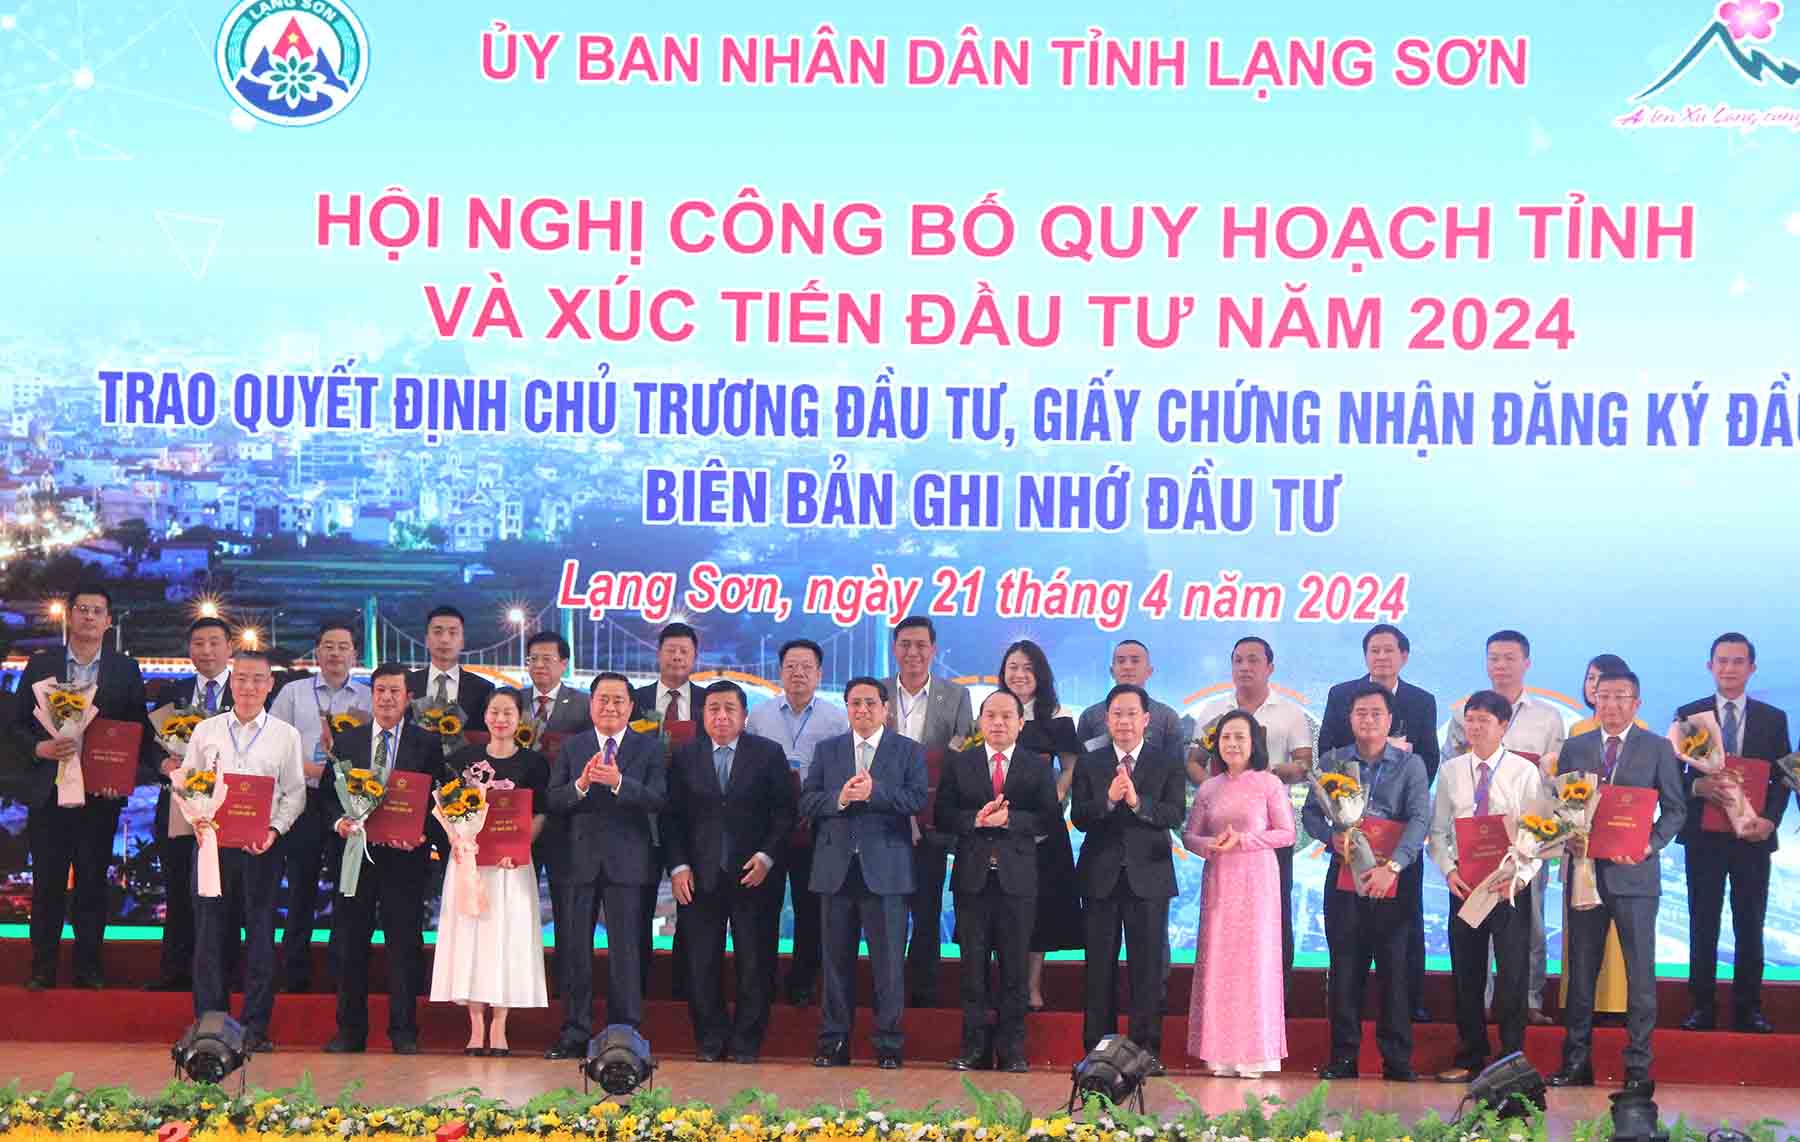 Thủ tướng Chính phủ Phạm Minh Chính dự hội nghị công bố quy hoạch và xúc tiến đầu tư tỉnh Lạng Sơn. Ảnh: Bùi Thơm 